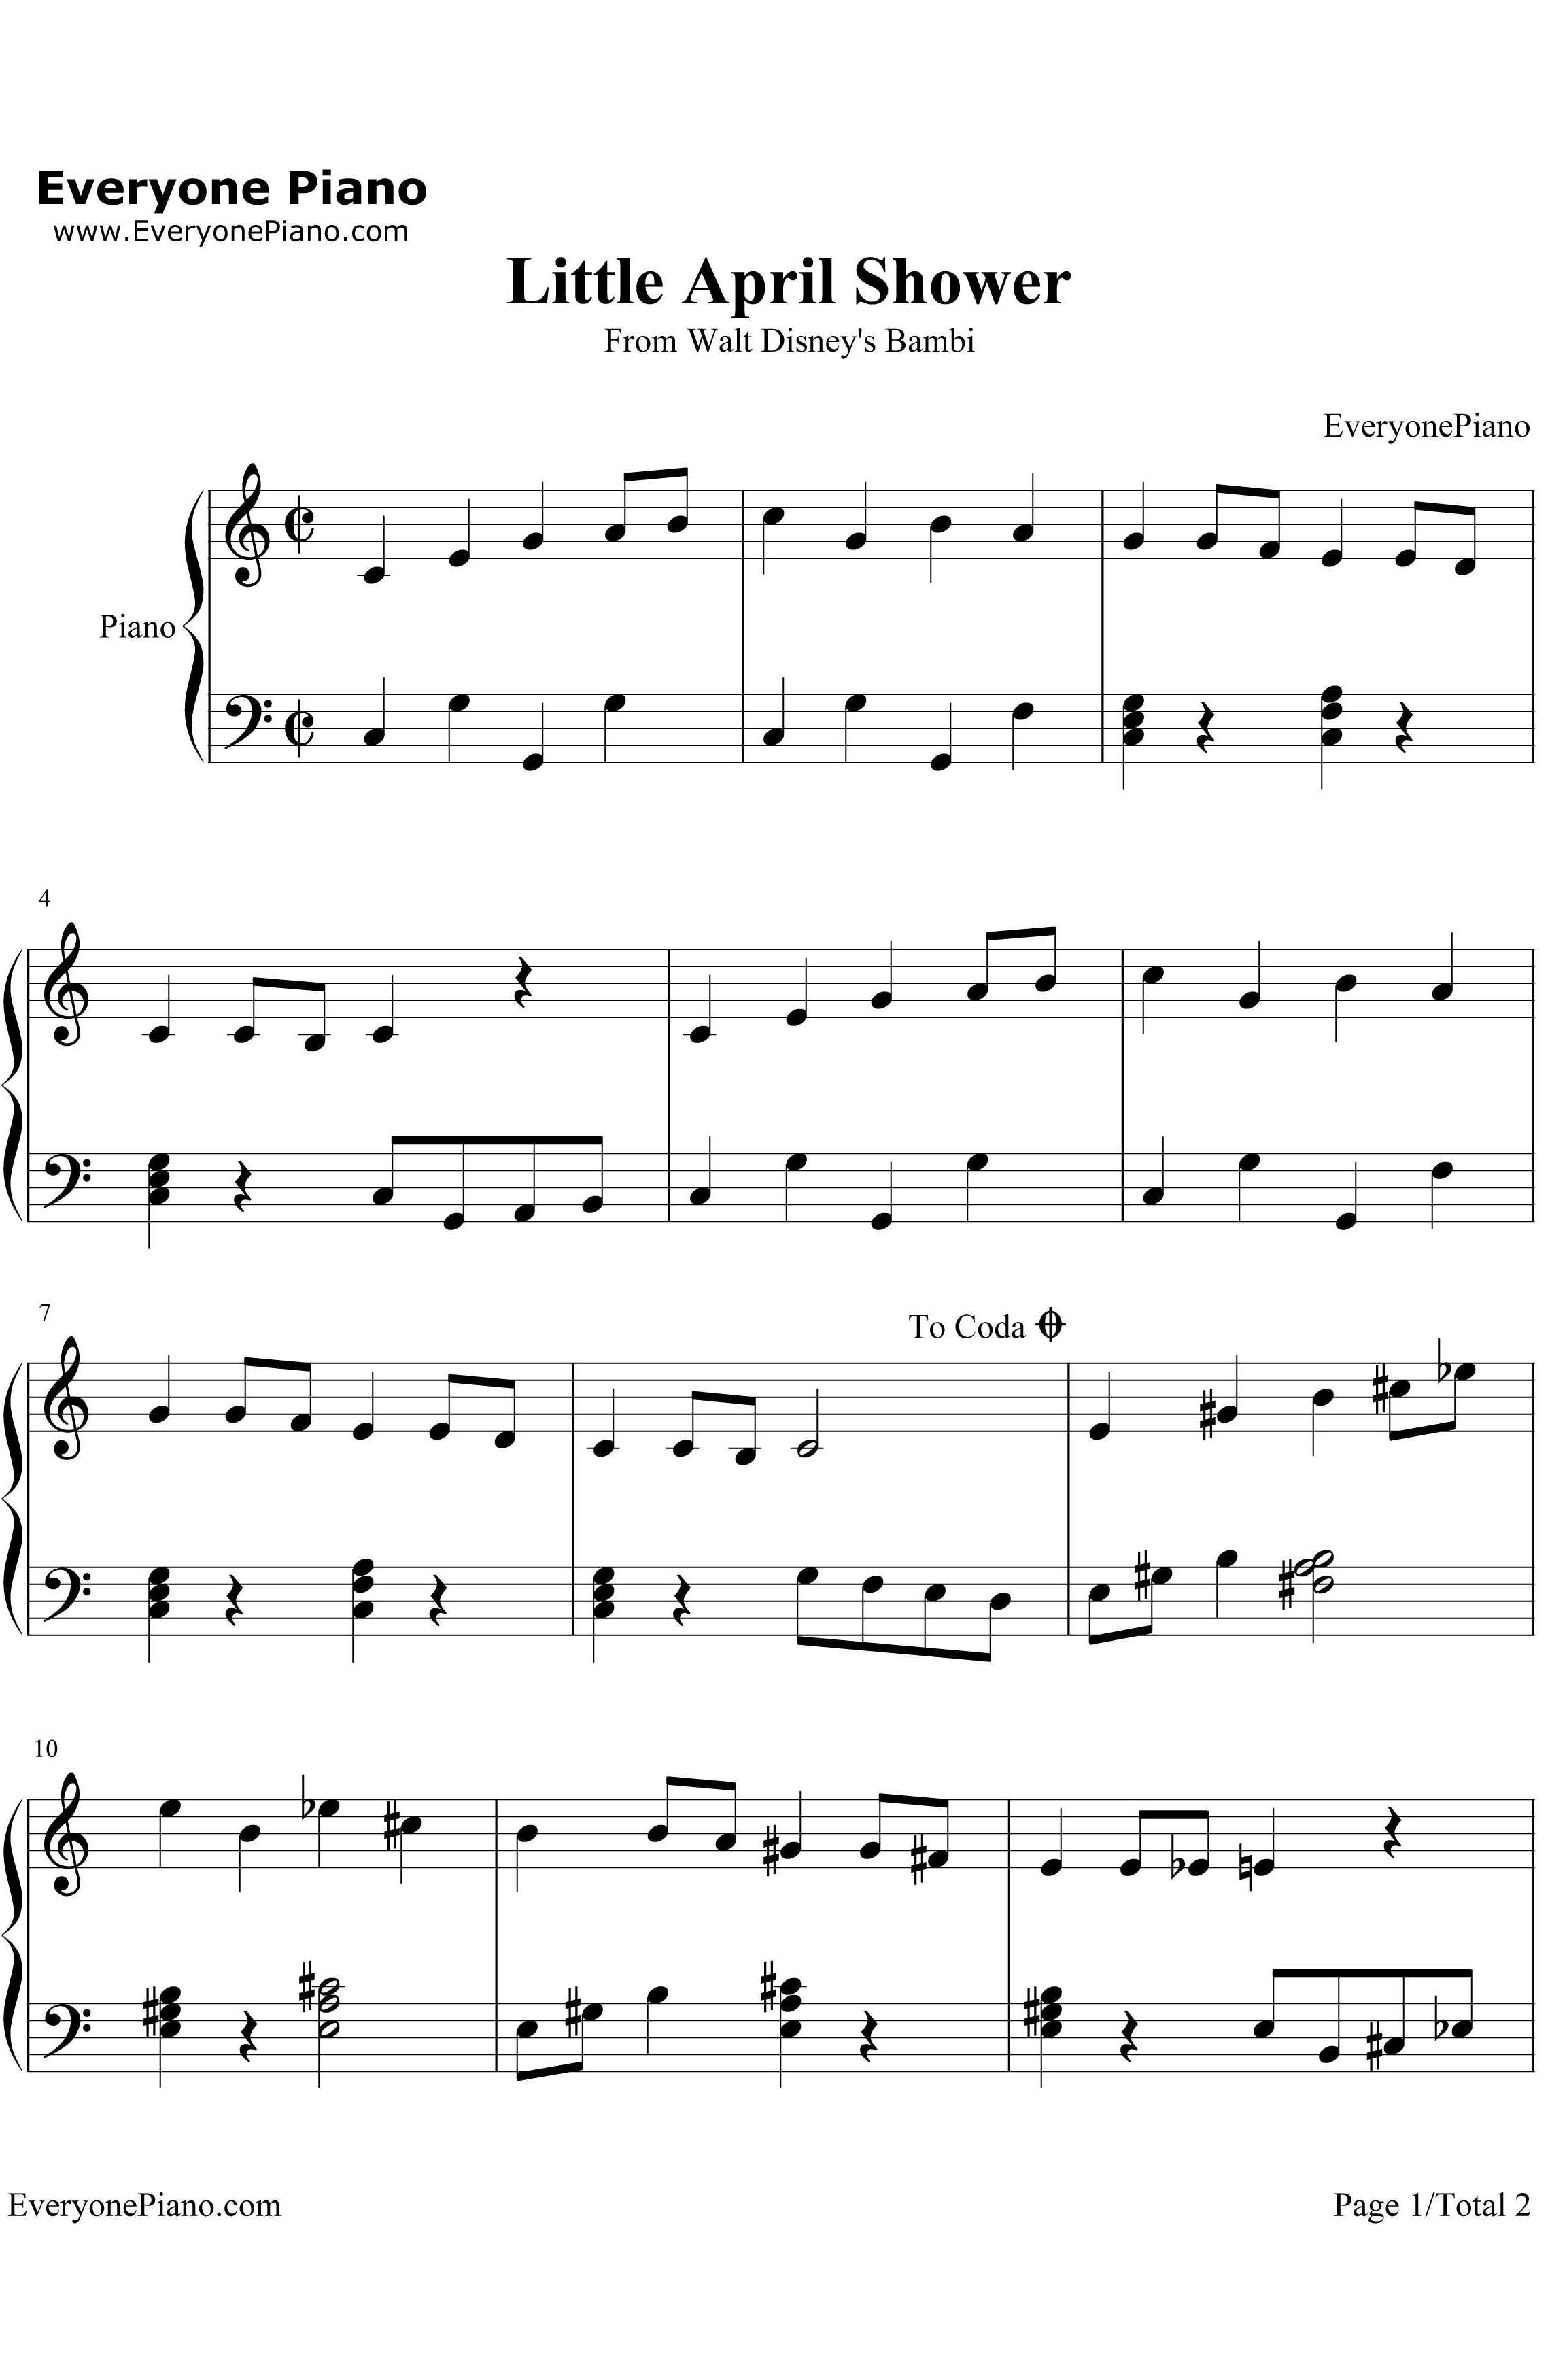 LittleAprilShower钢琴谱-FrankChurchill-迪斯尼动画《小鹿斑比》插曲1